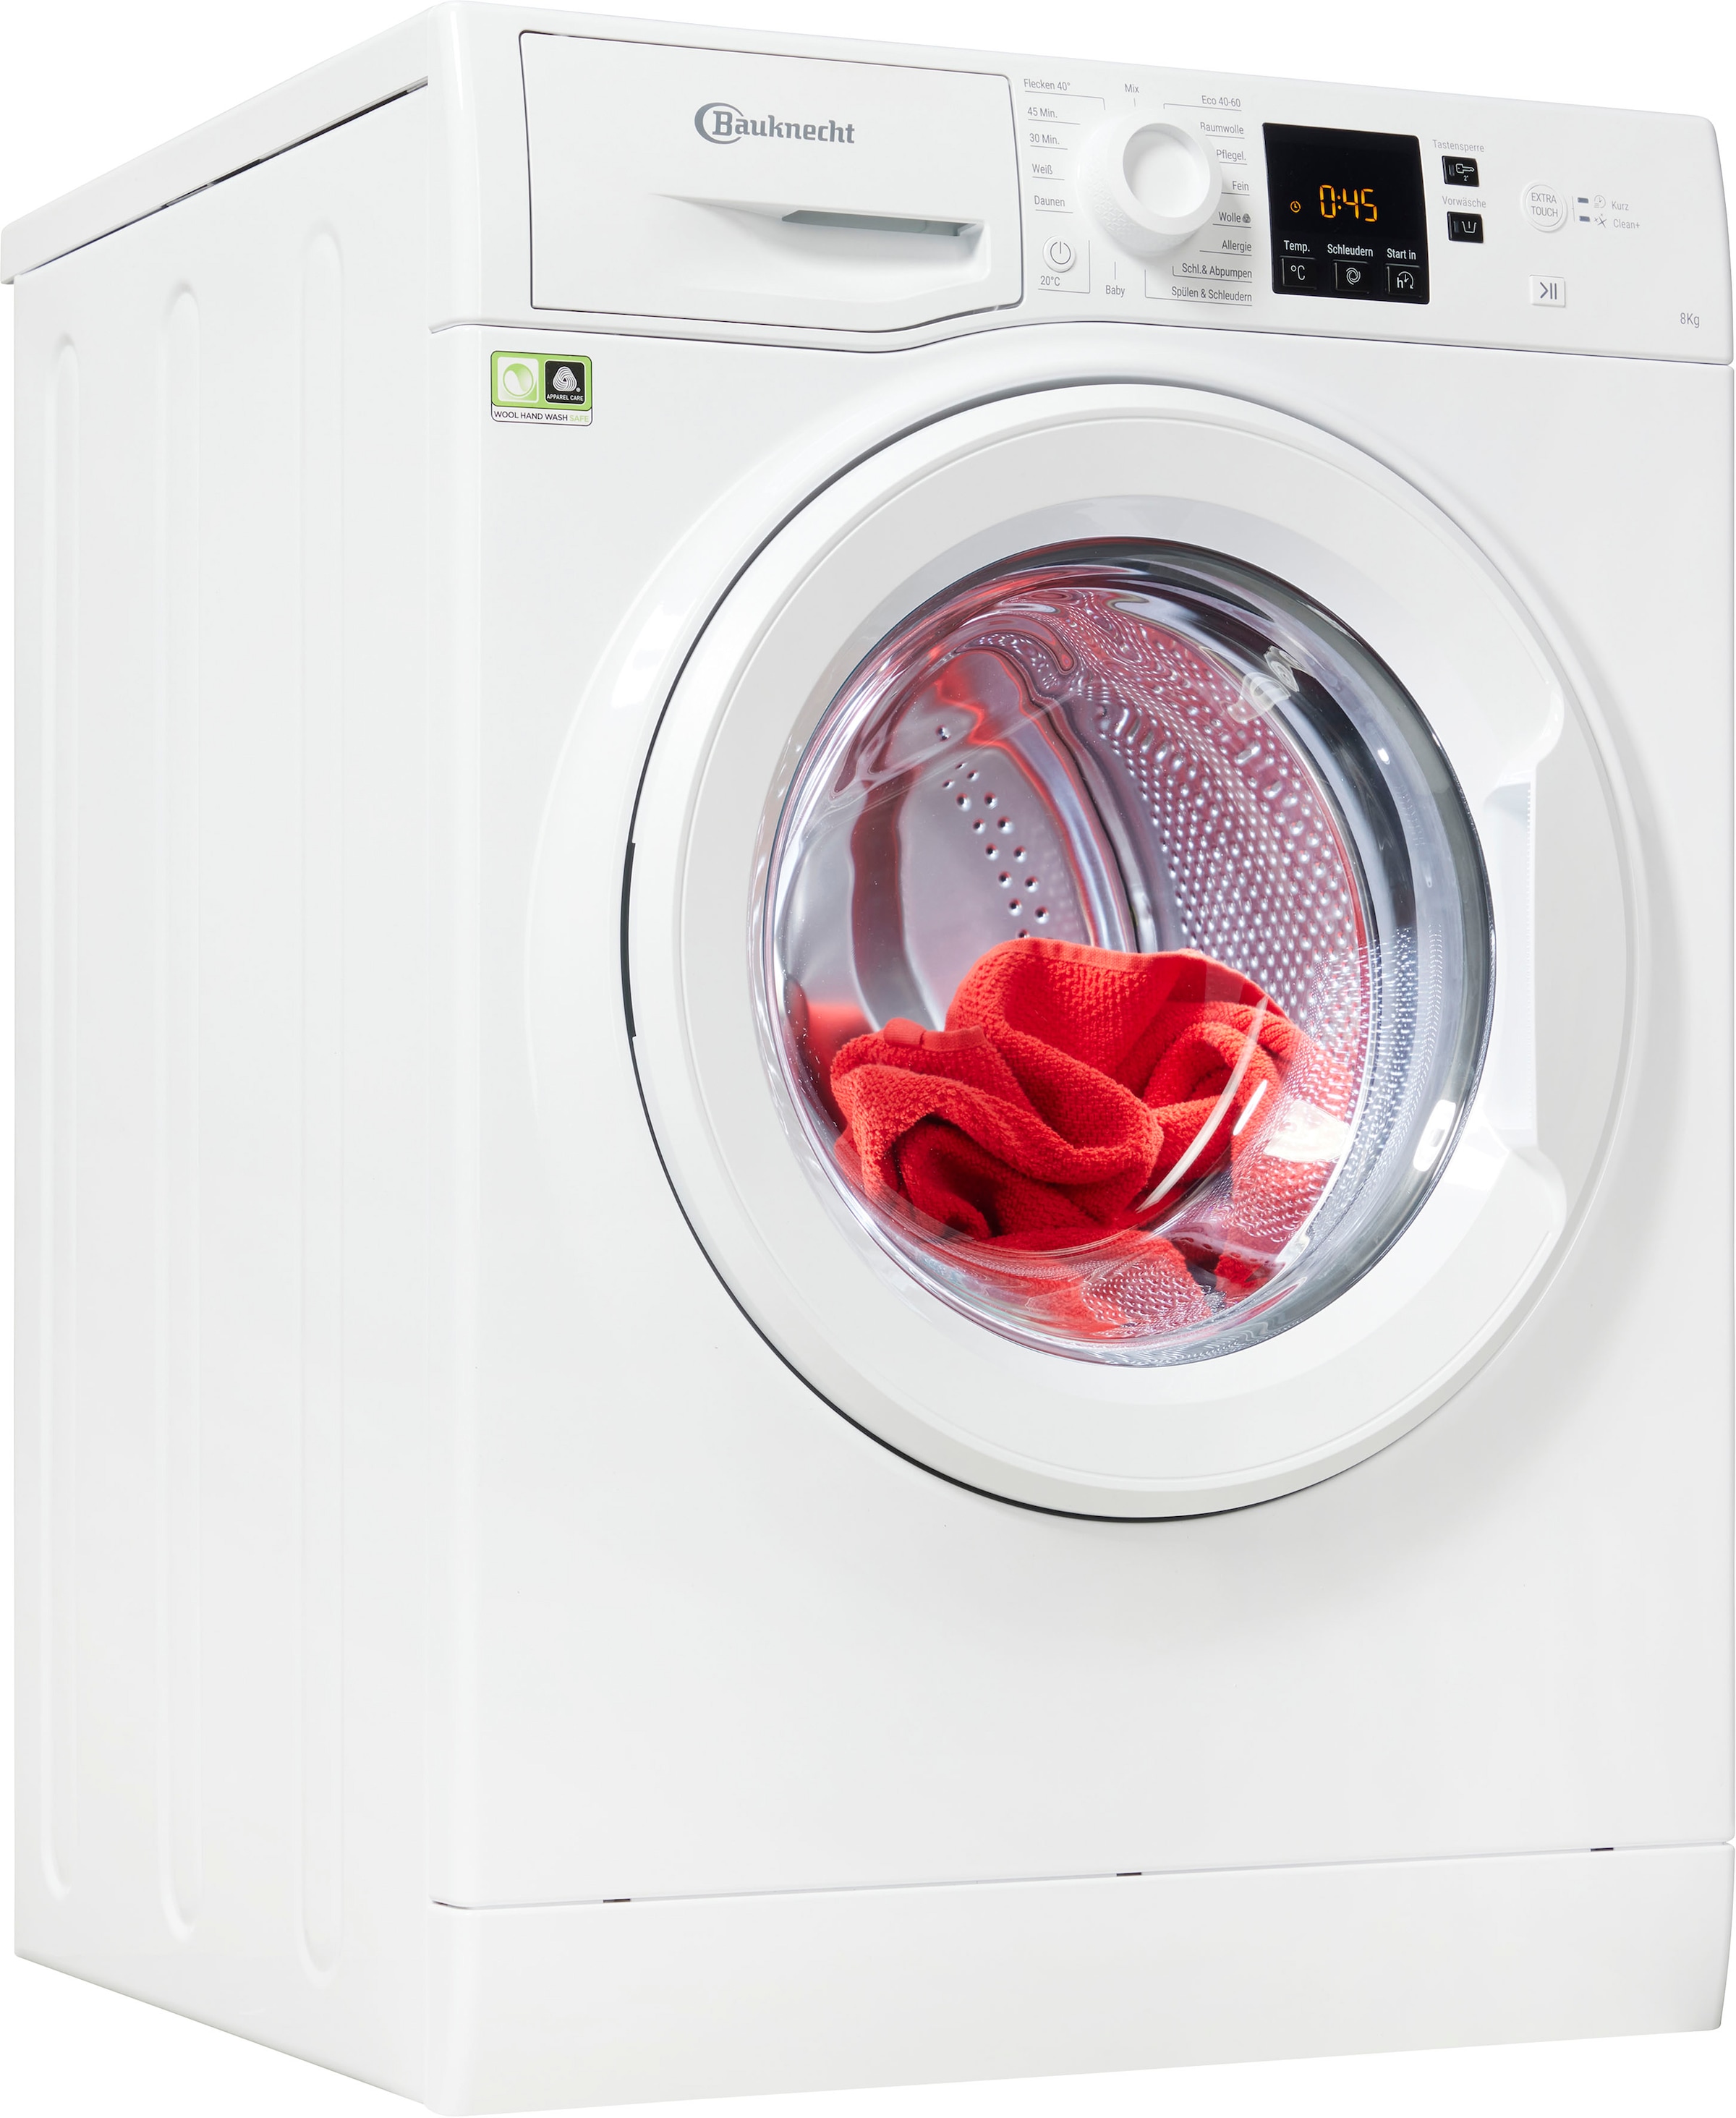 Bauknecht Waschmaschinen jetzt auf Teilzahlung bestellen ▻ Universal. Jeder  hat sein